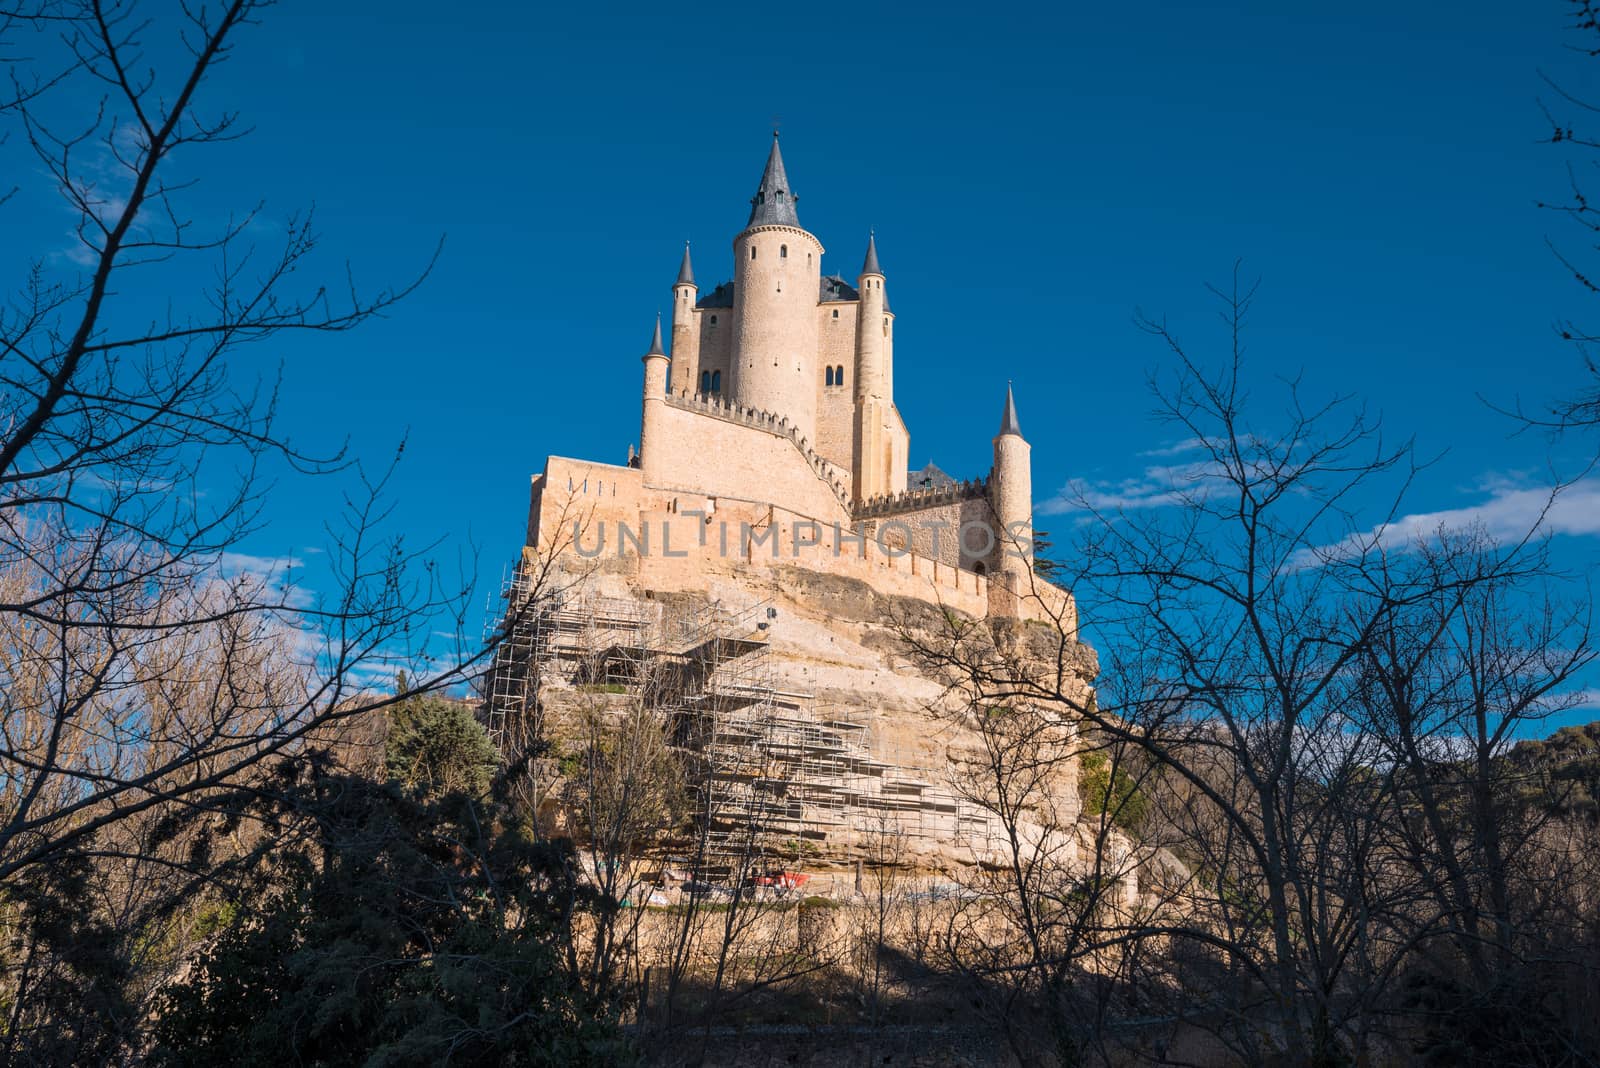 Famous Alcazar castle in Segovia, Castilla y Leon, Spain.